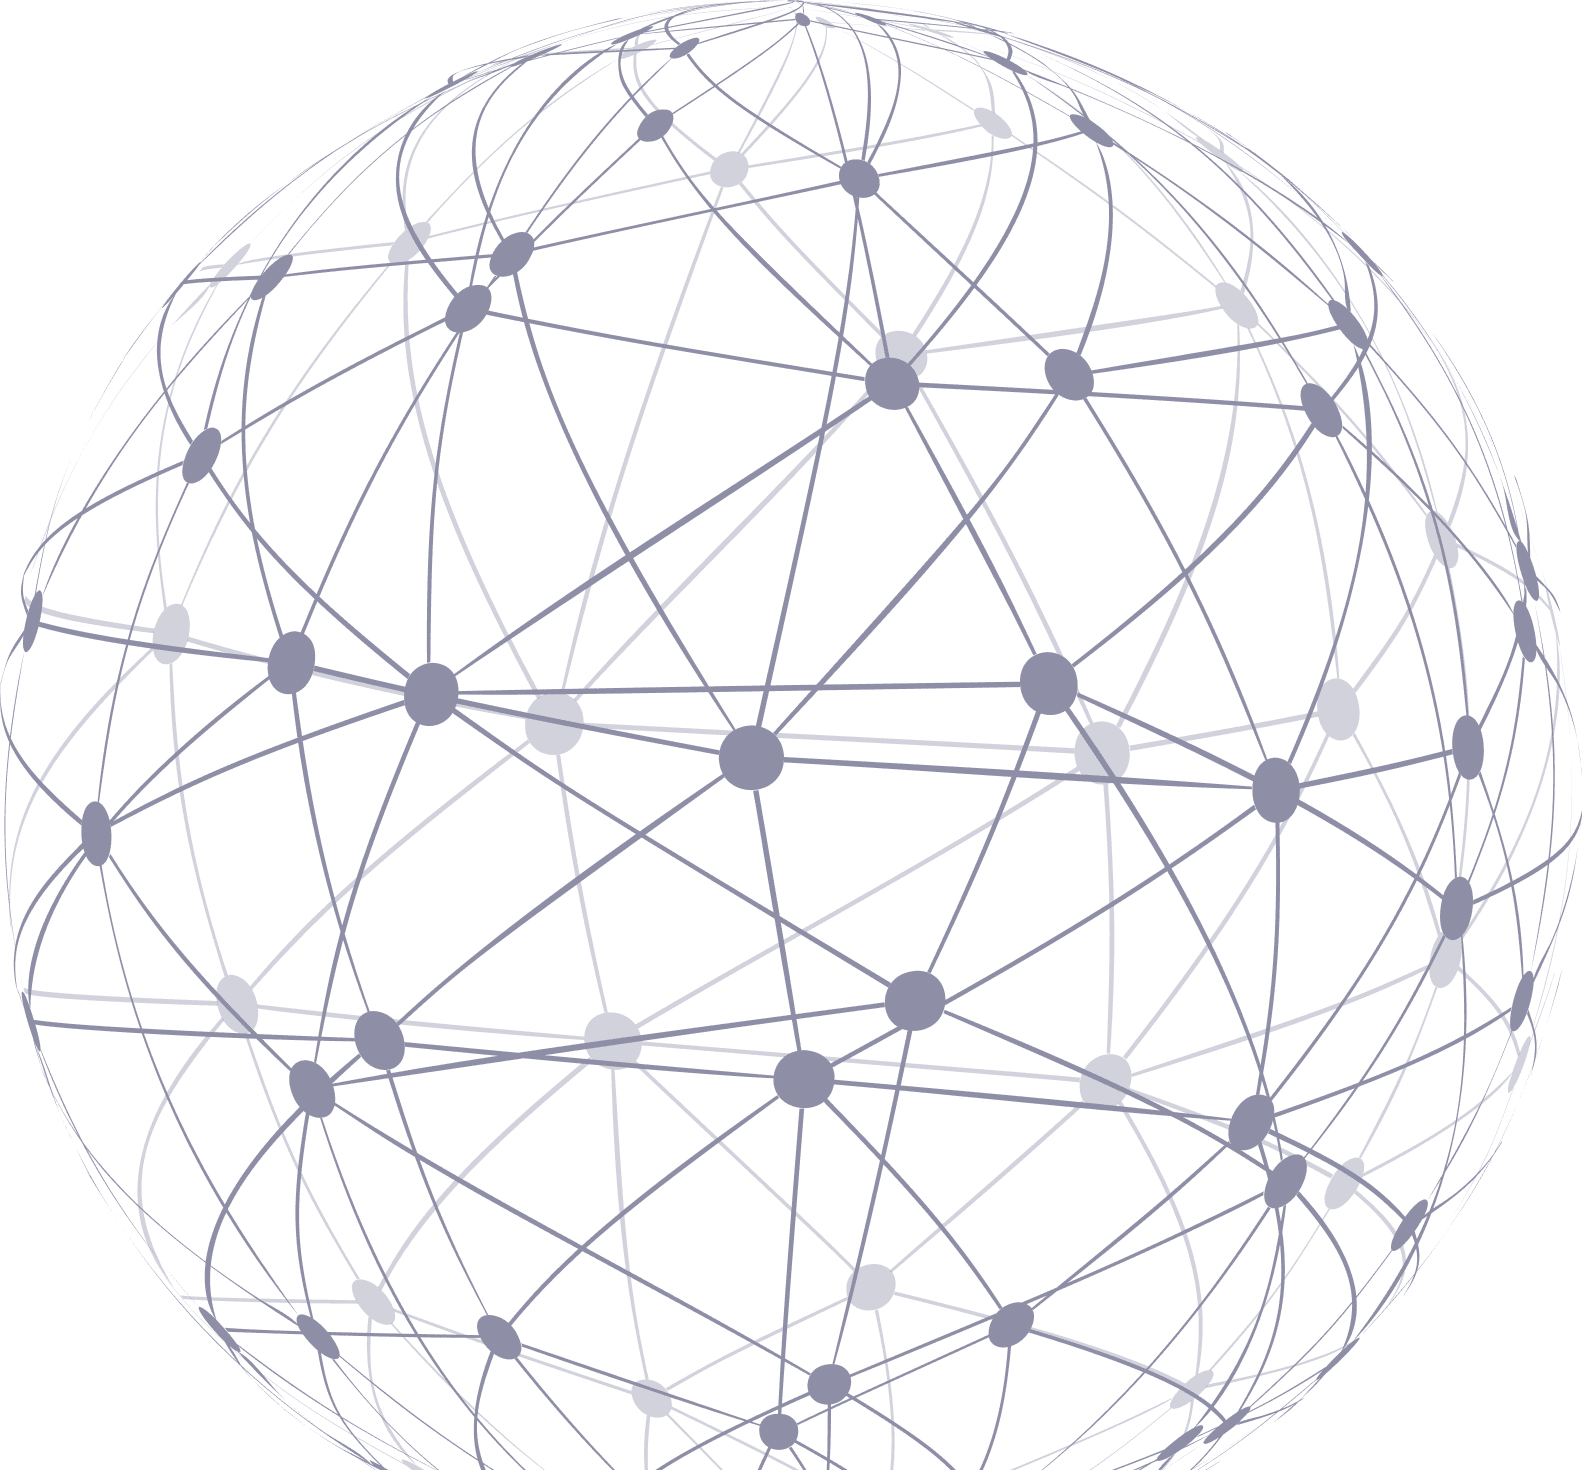 Global Network